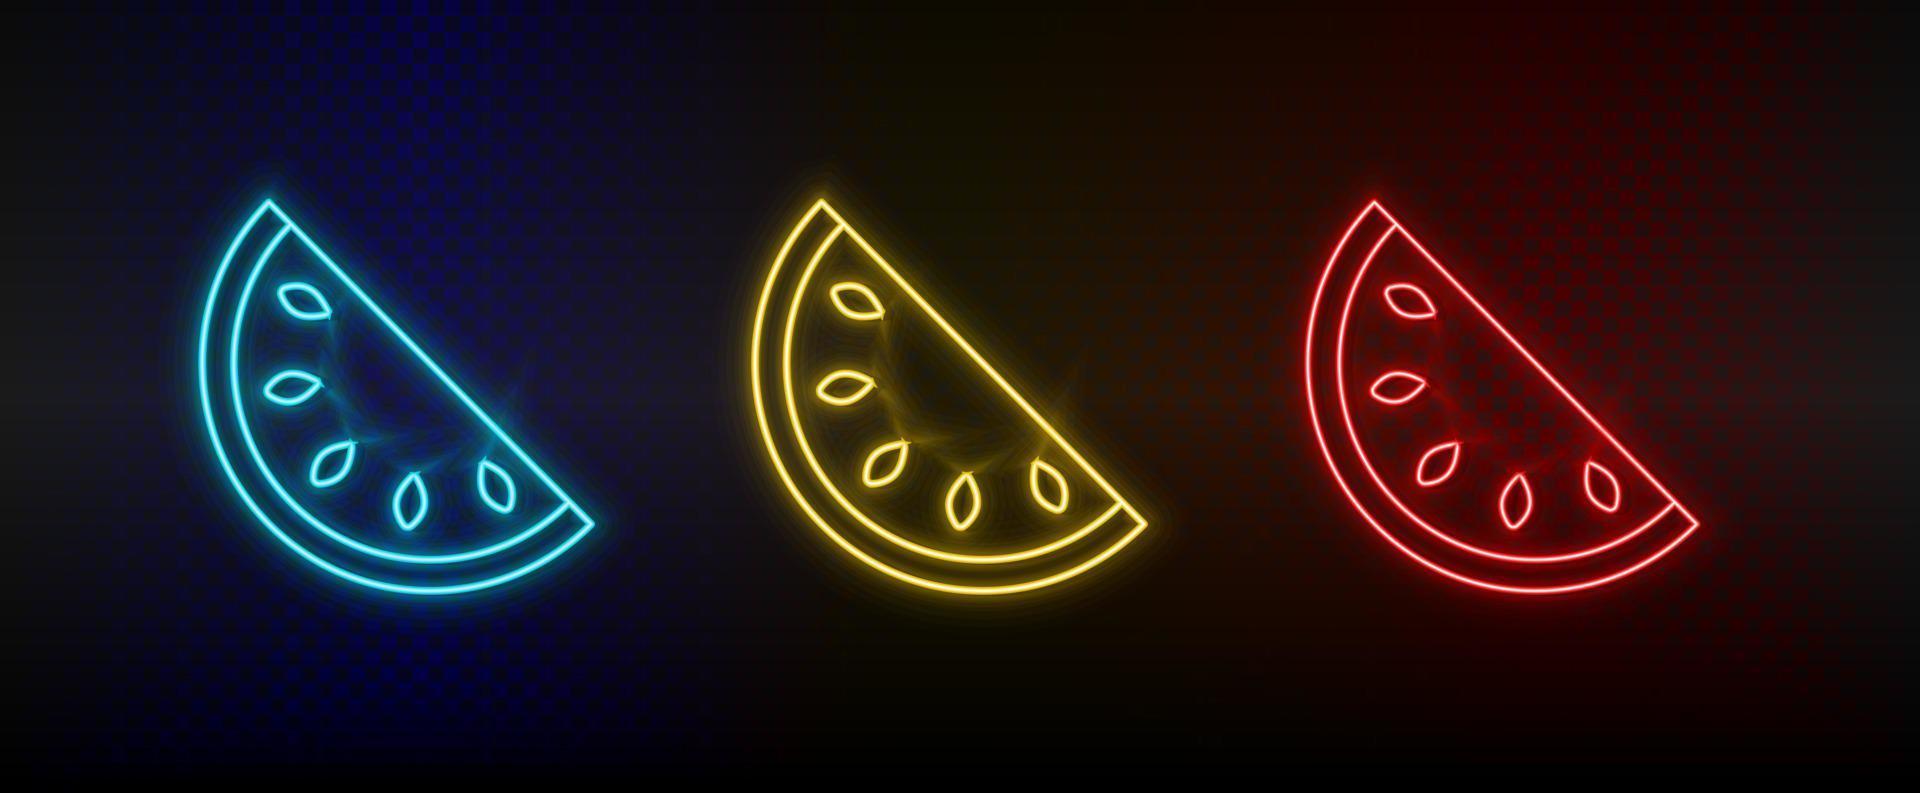 Neon- Symbol einstellen Wassermelone. einstellen von Rot, Blau, Gelb Neon- Vektor Symbol auf dunkel Hintergrund